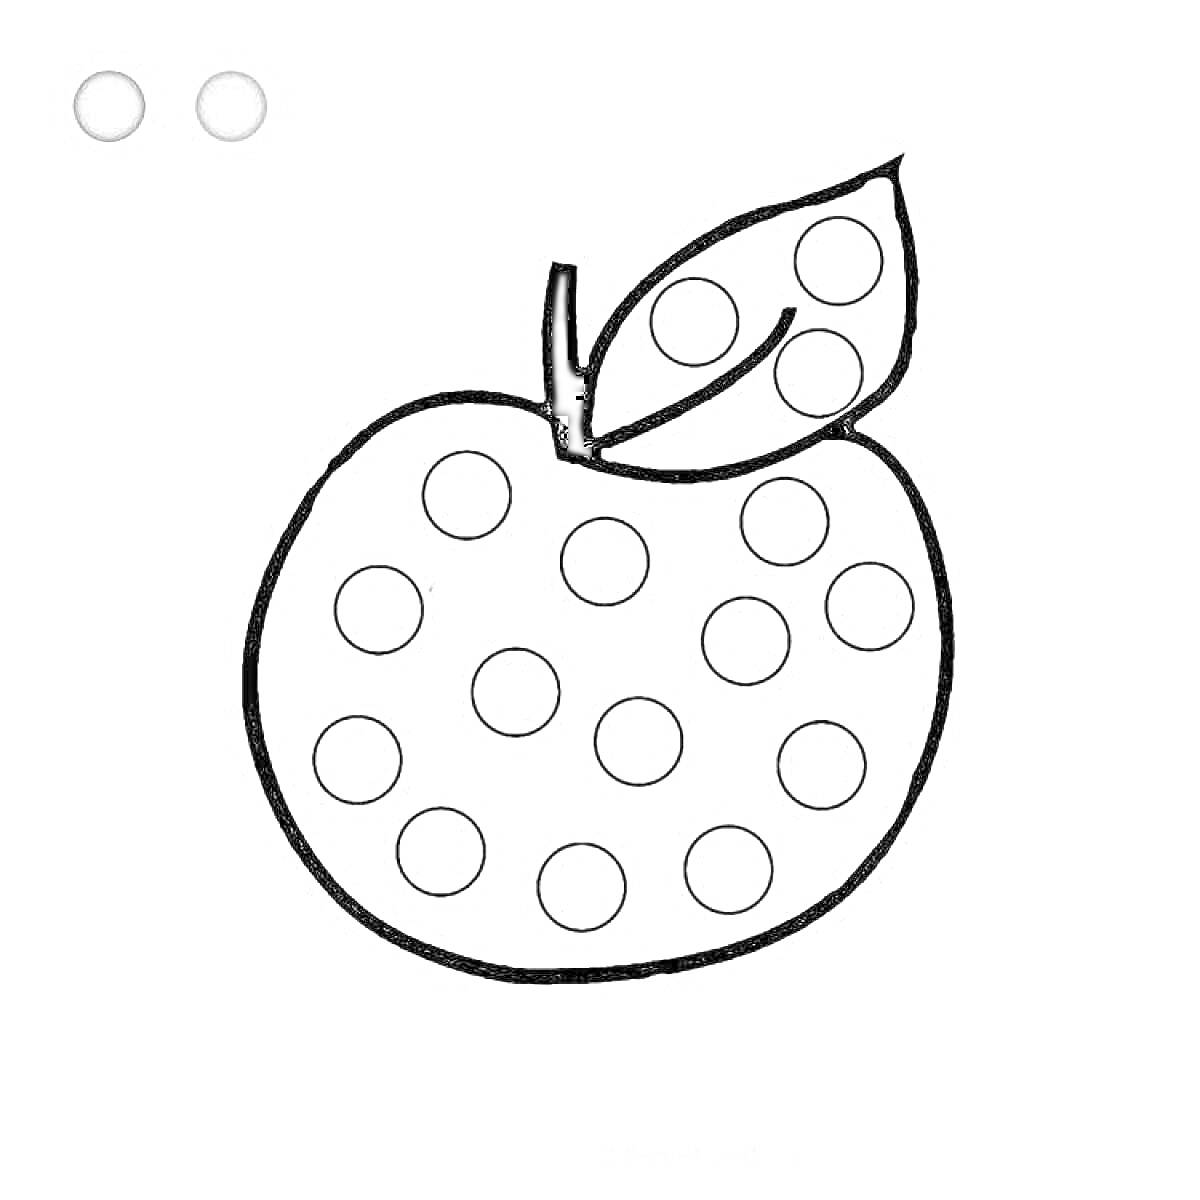 Раскраска яблоко с листочком и круглыми отверстиями для пластилина